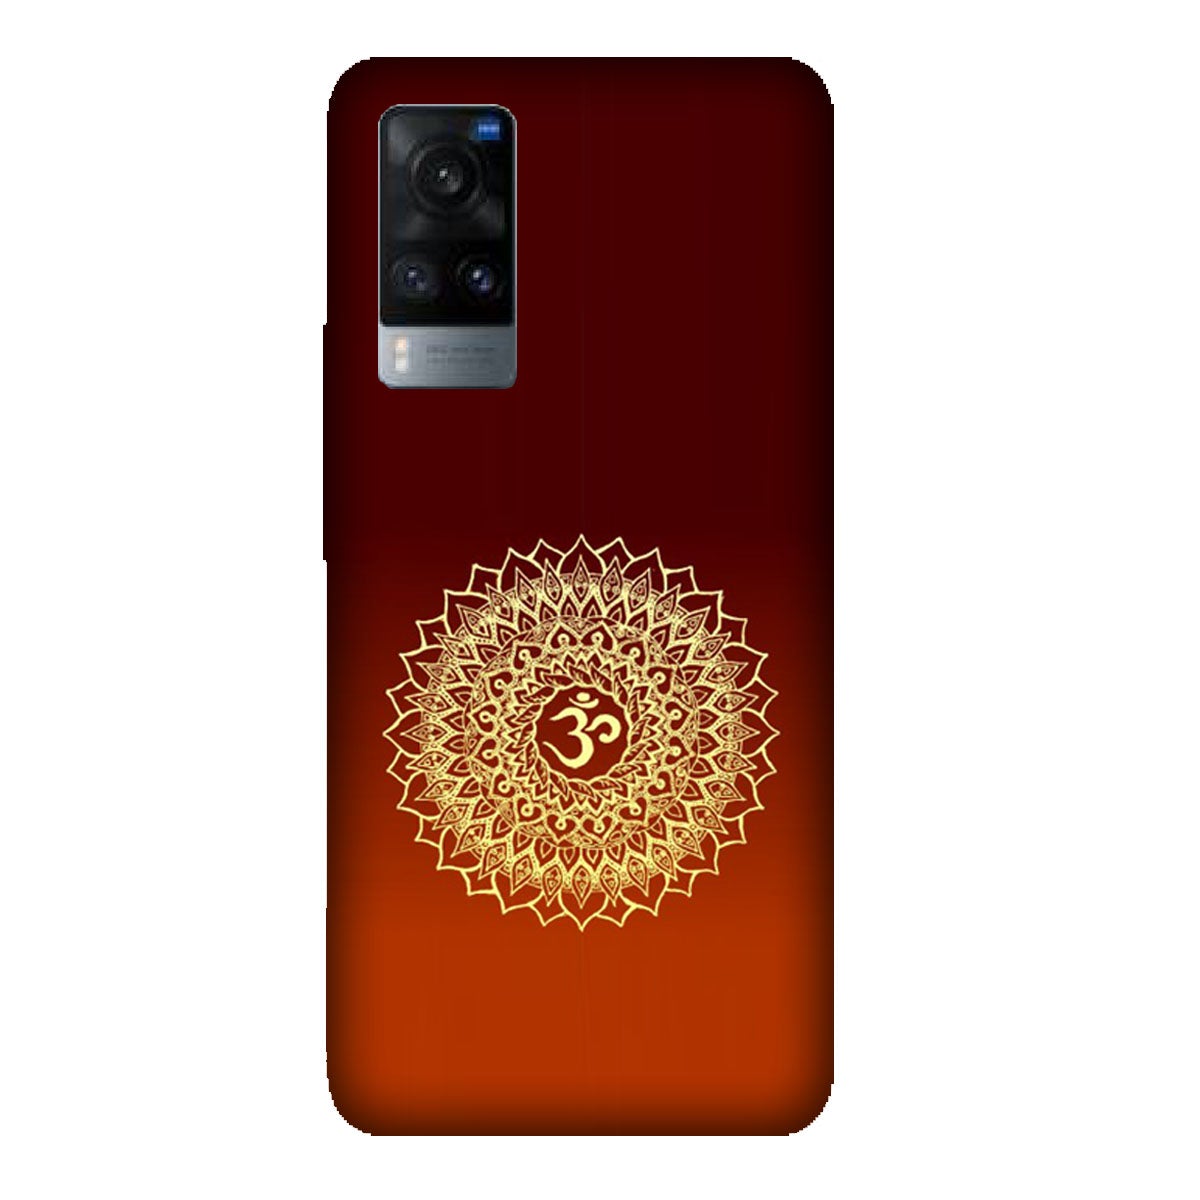 Om Namo Narayana - Mobile Phone Cover - Hard Case - Vivo